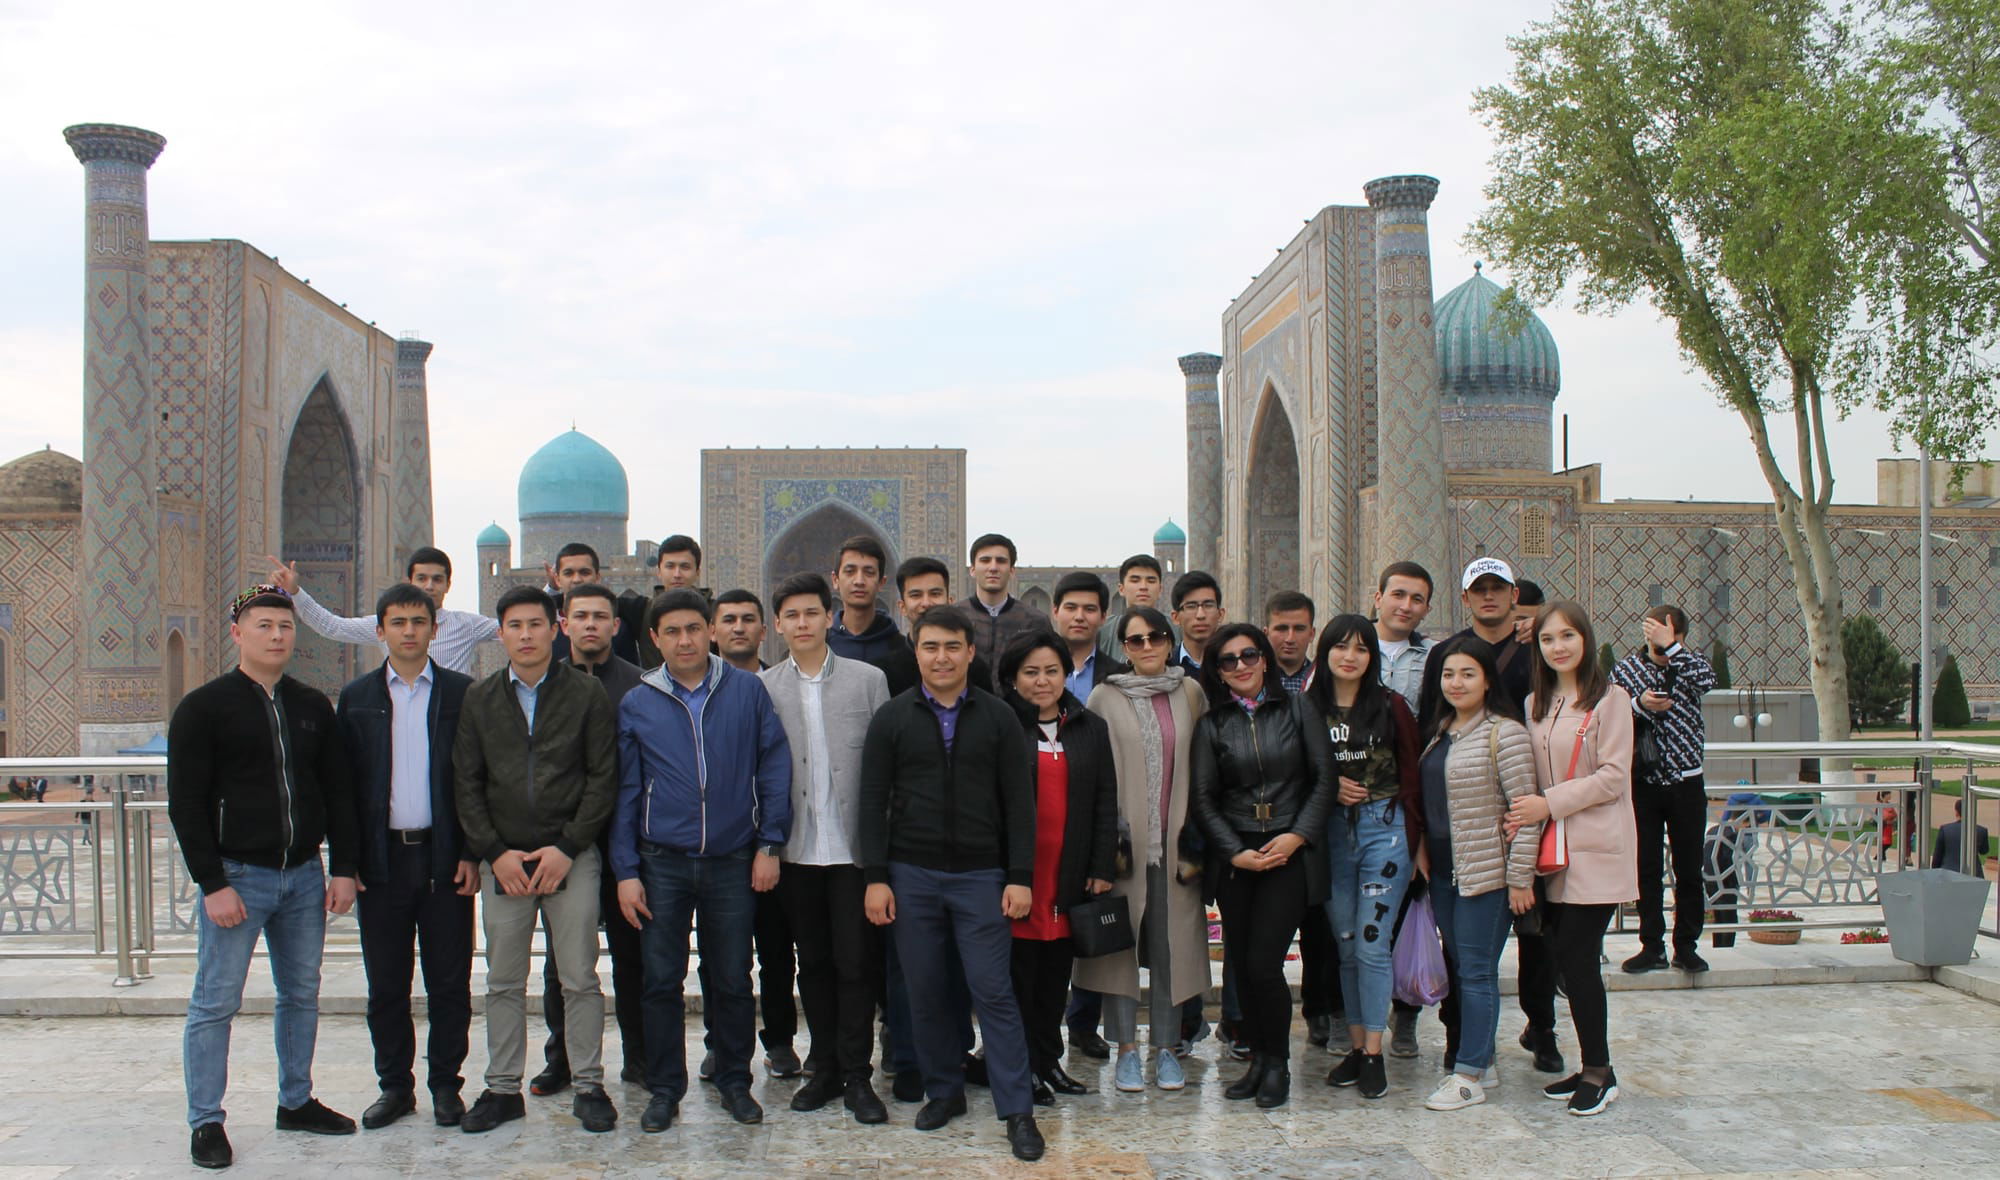 A trip to Samarkand